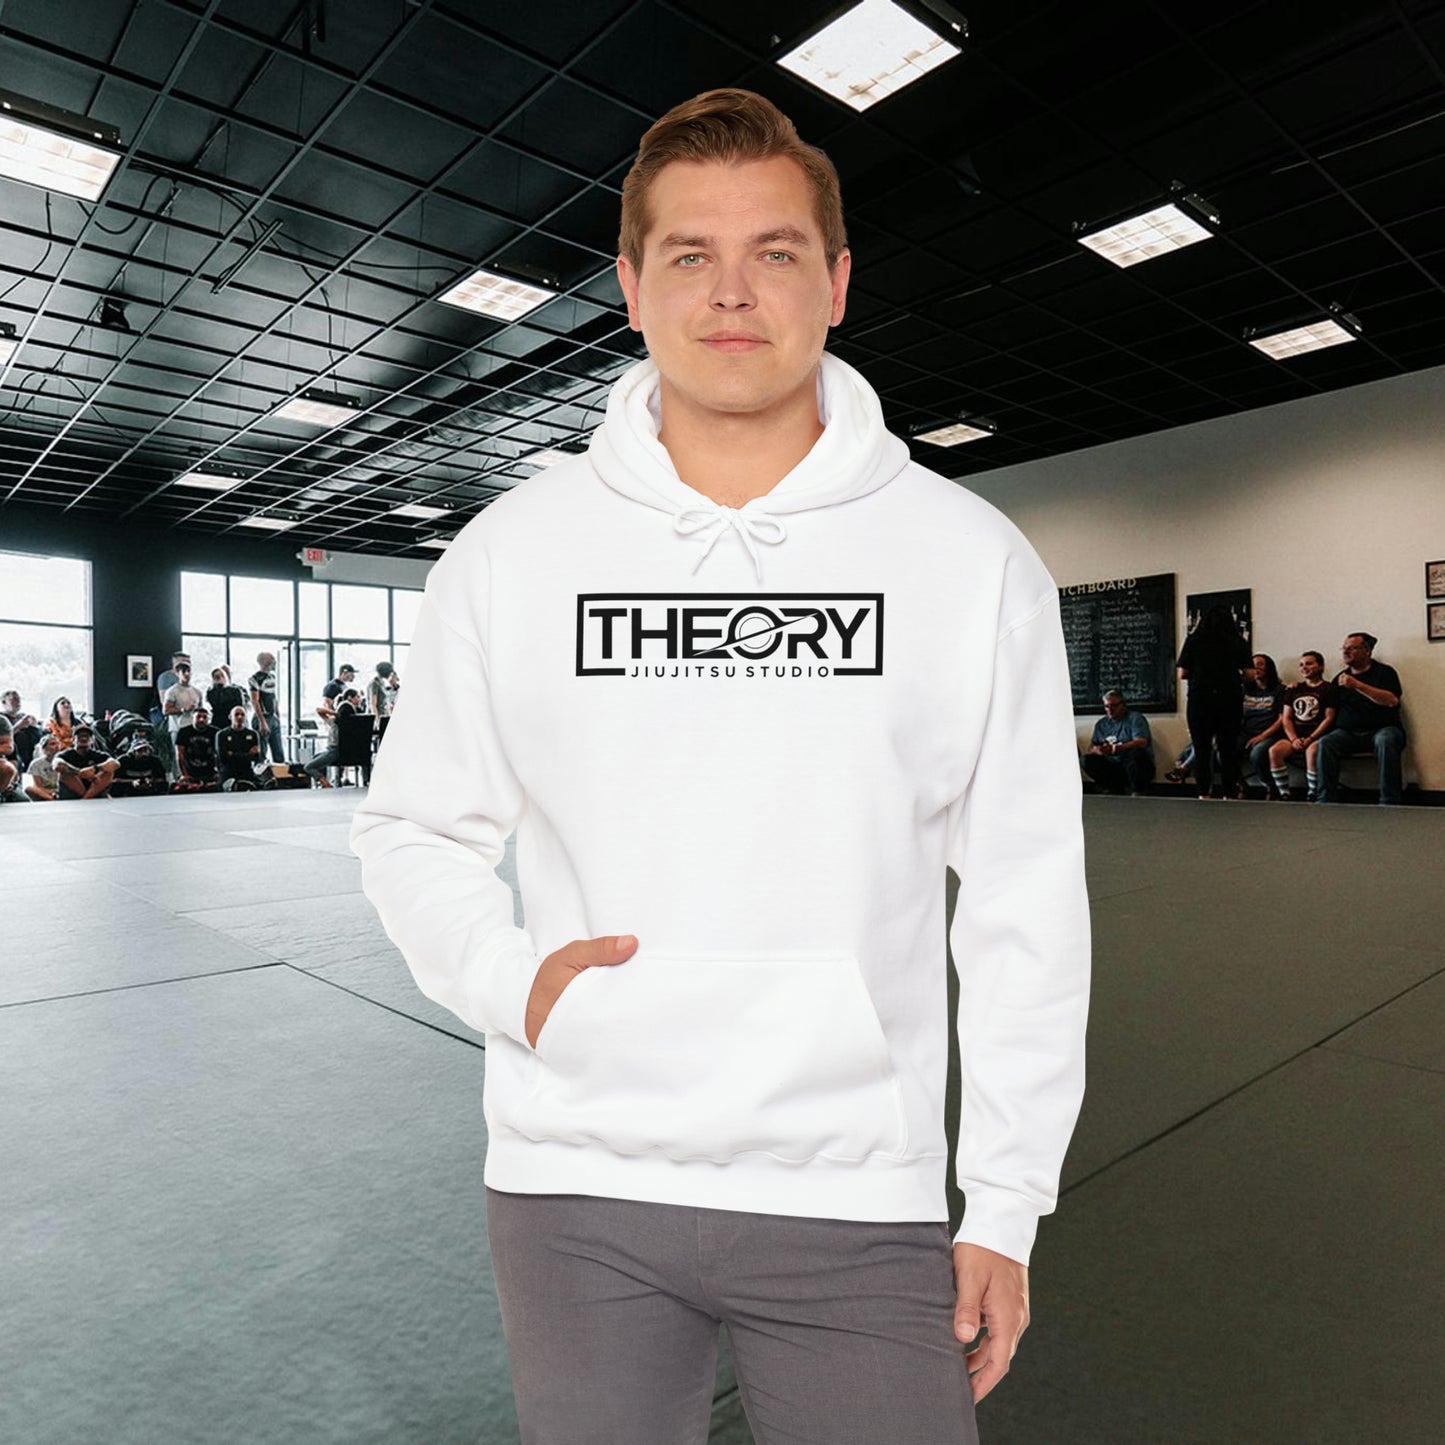 Theory Jiu-Jitsu Studio Logo Sweatshirt